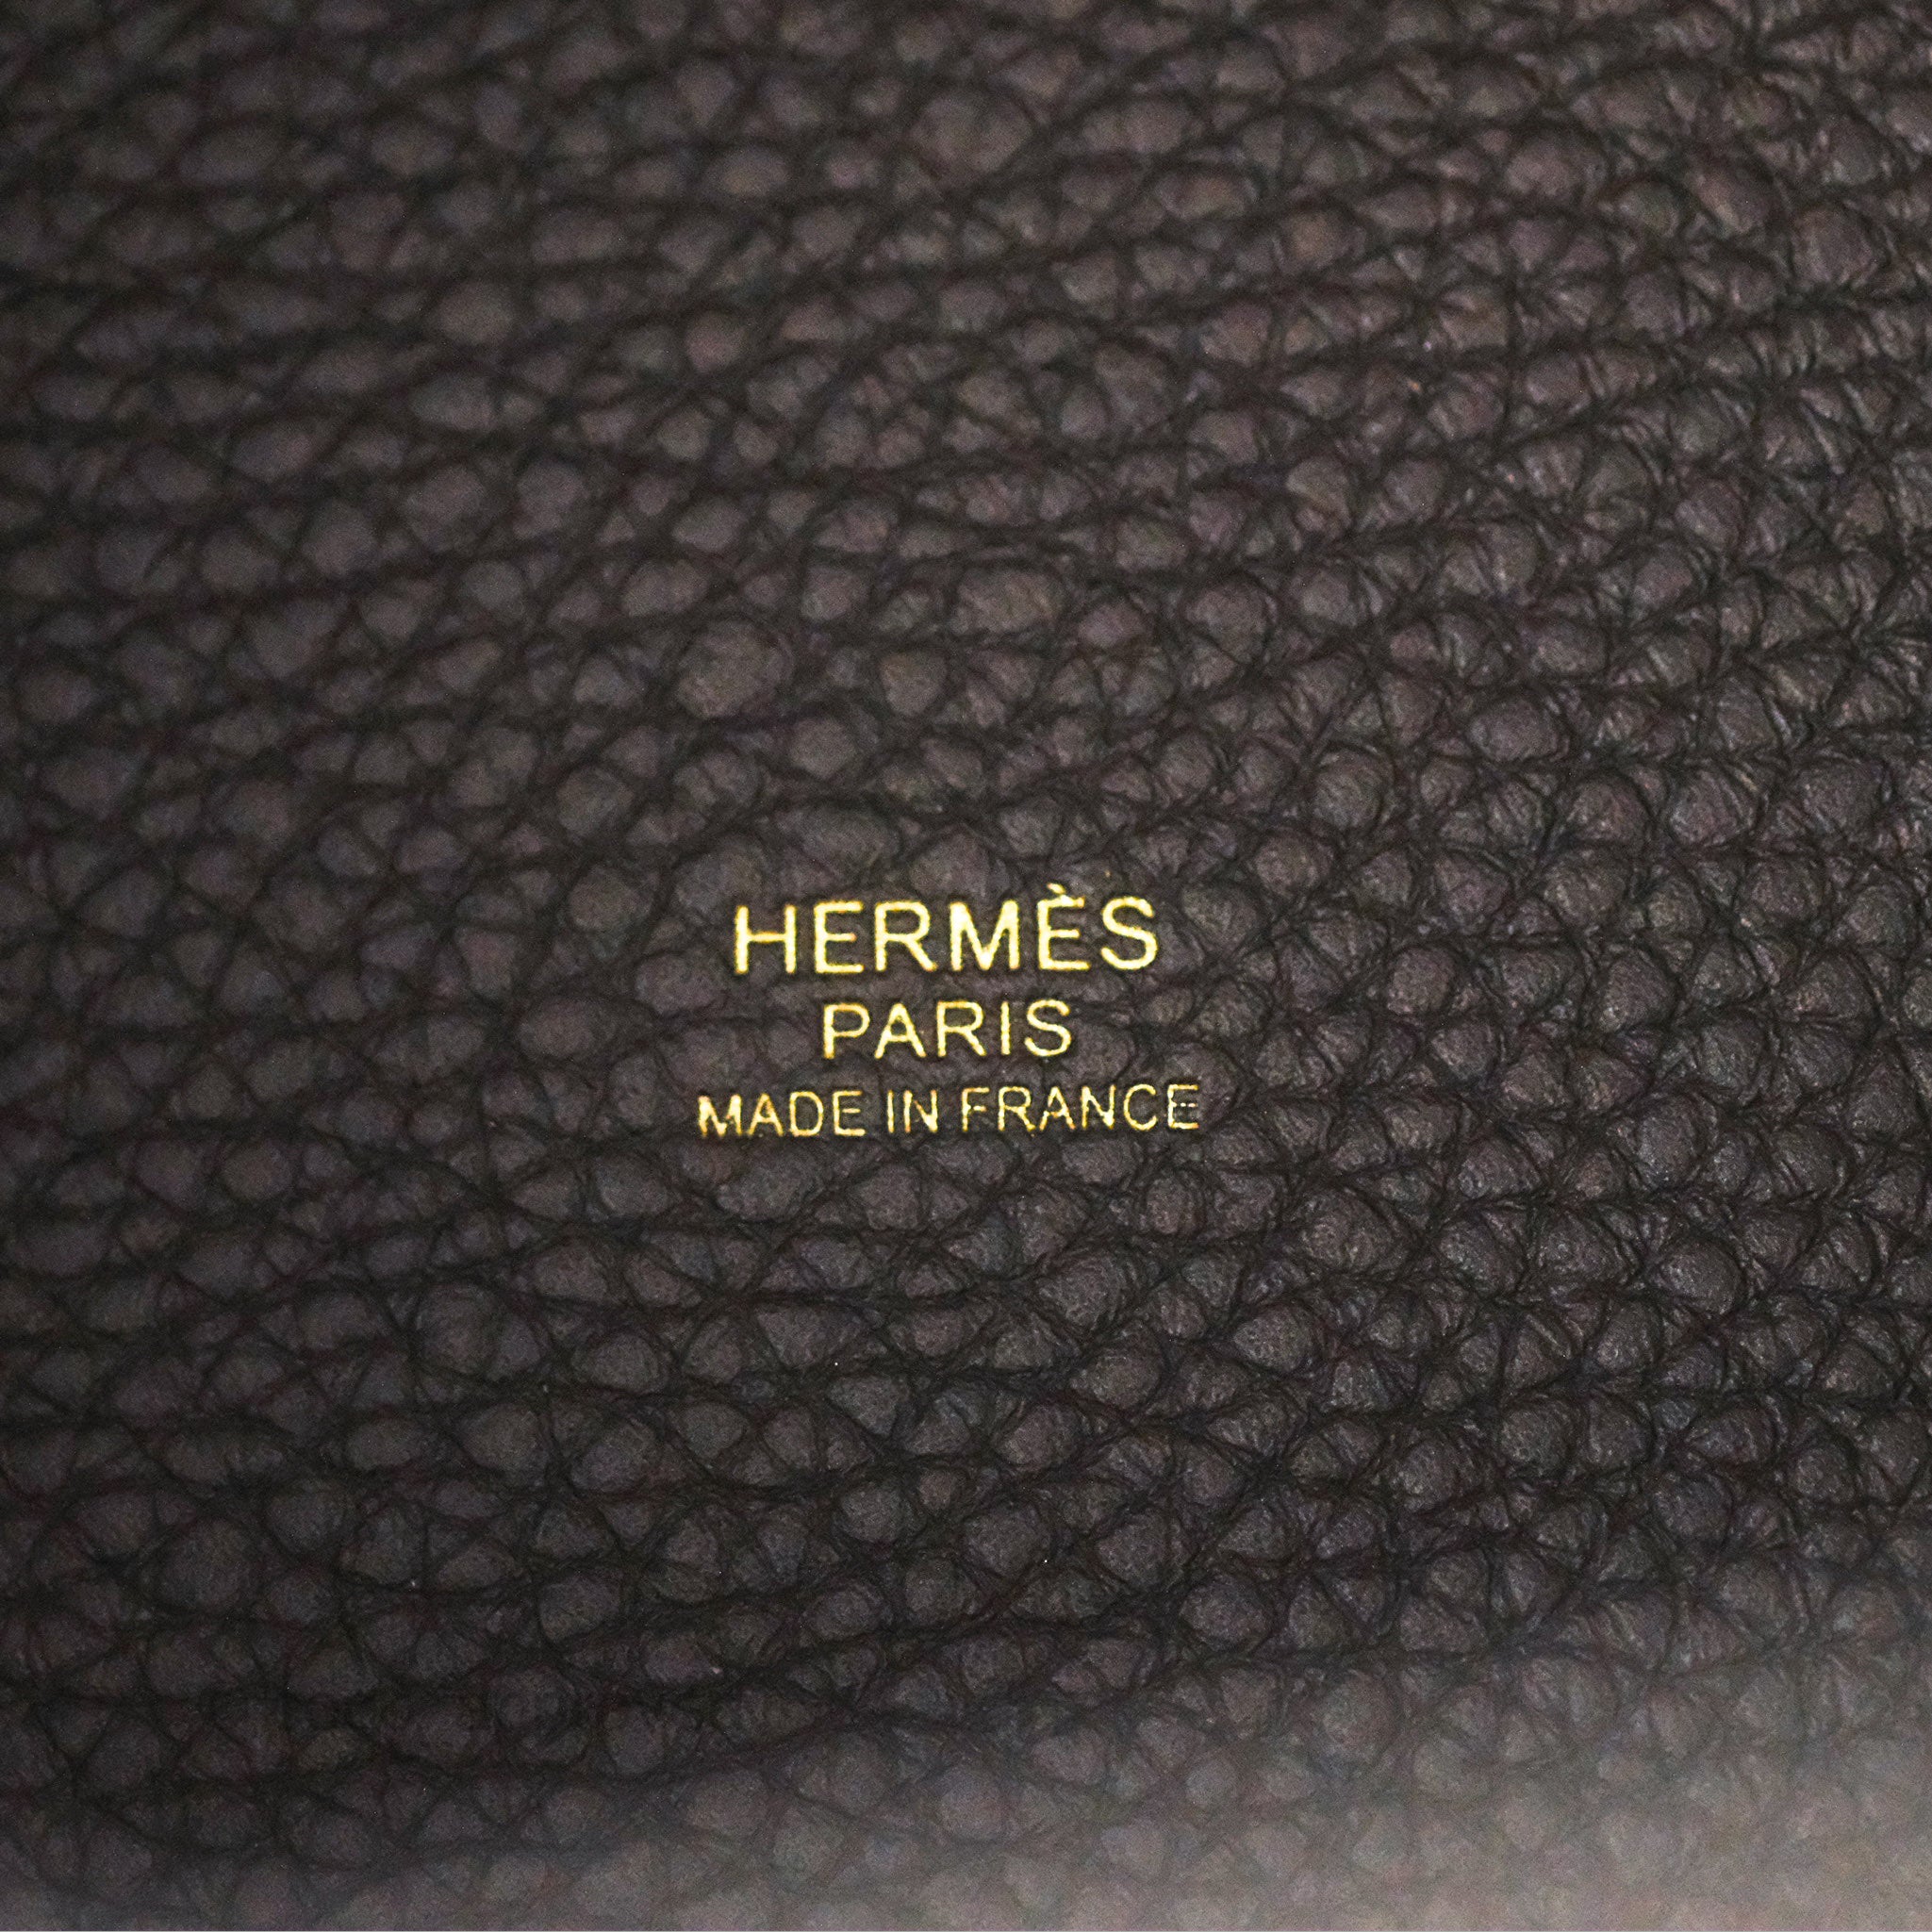 Sold at Auction: HERMÈS - AYALA 2014 Sac PICOTIN LOCK 18 Taurillon Clémence  Géranium Peinture acrylique Garniture métal argenté palladié